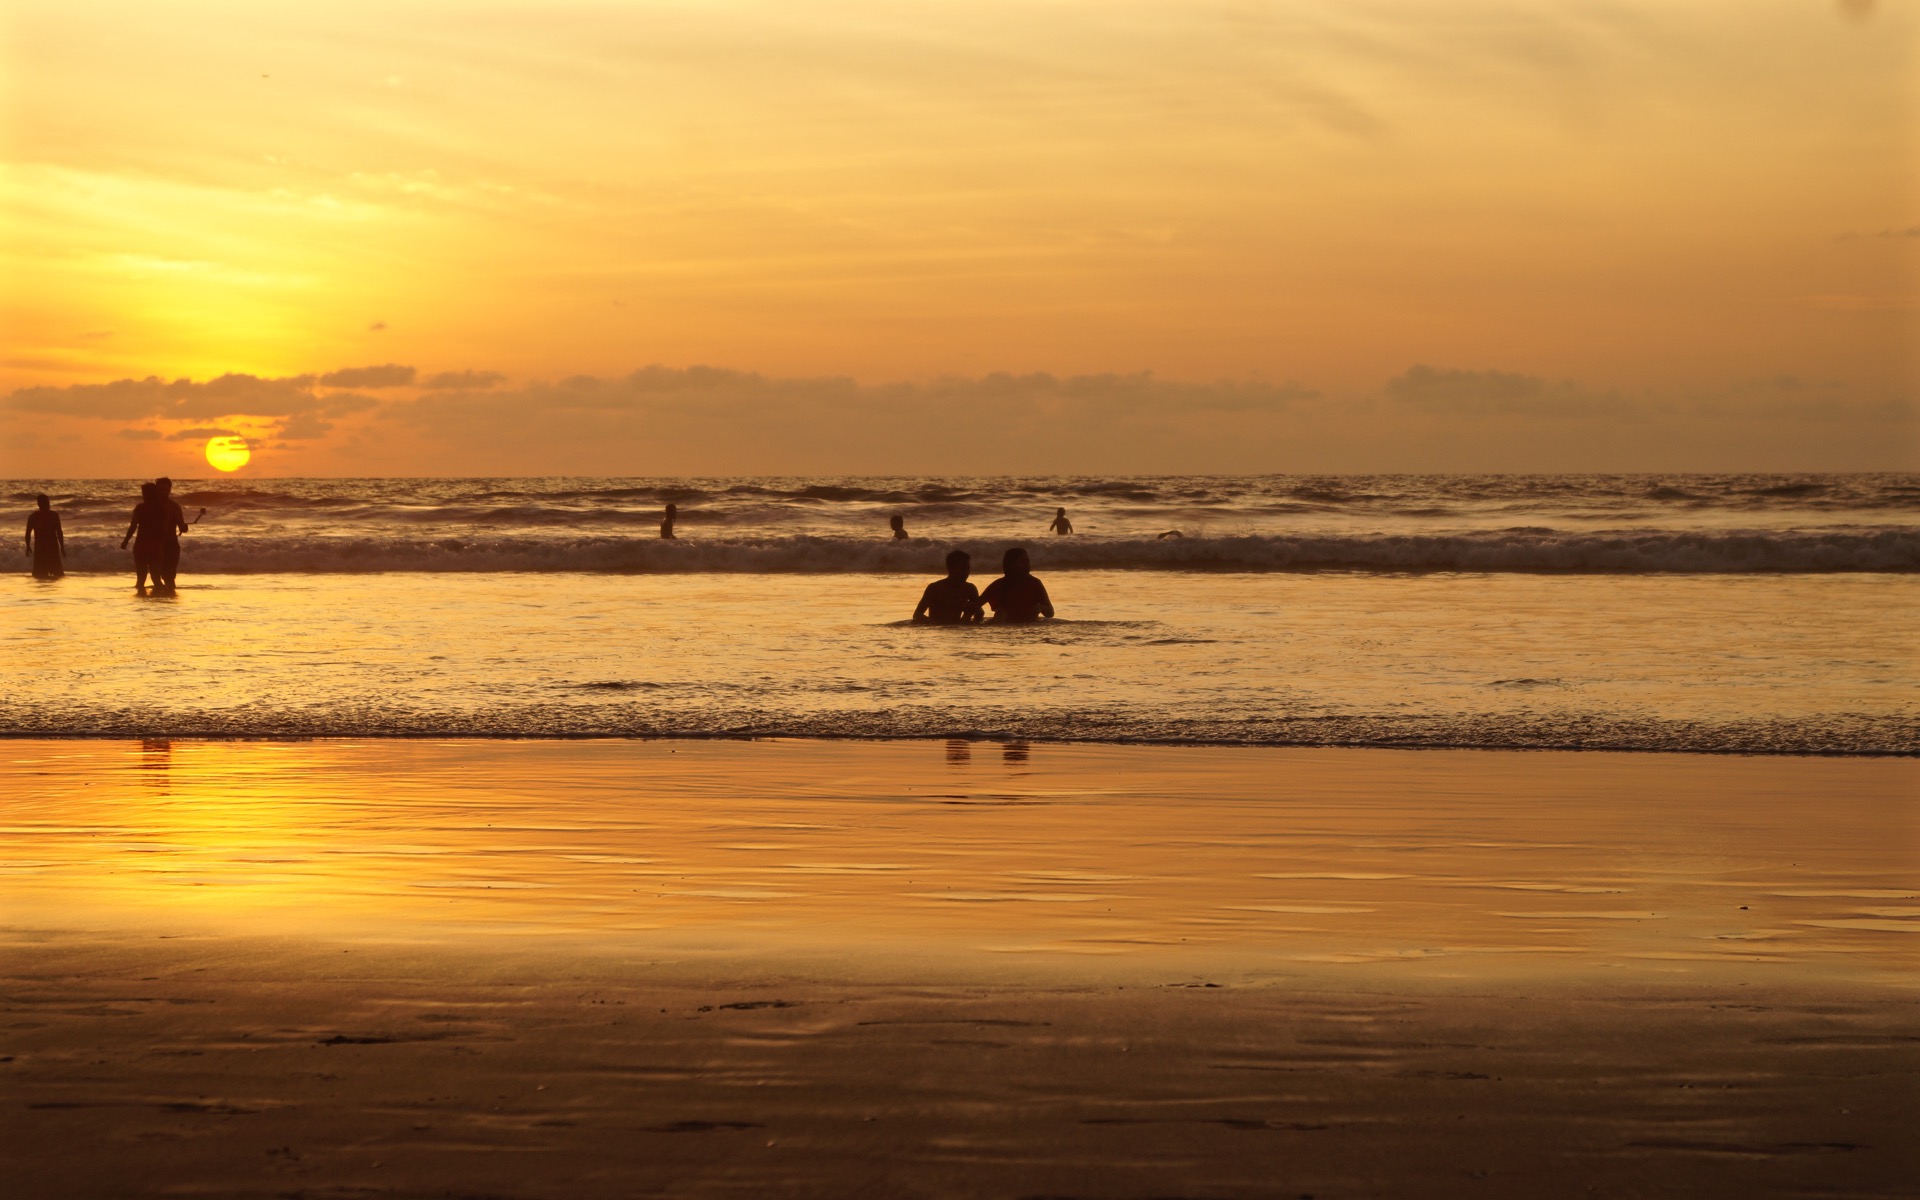 Der Sonnenuntergang am Horizont taucht den Strand in ein sanftes gelbes Licht, vereinzelt sind Menschen im Wasser.